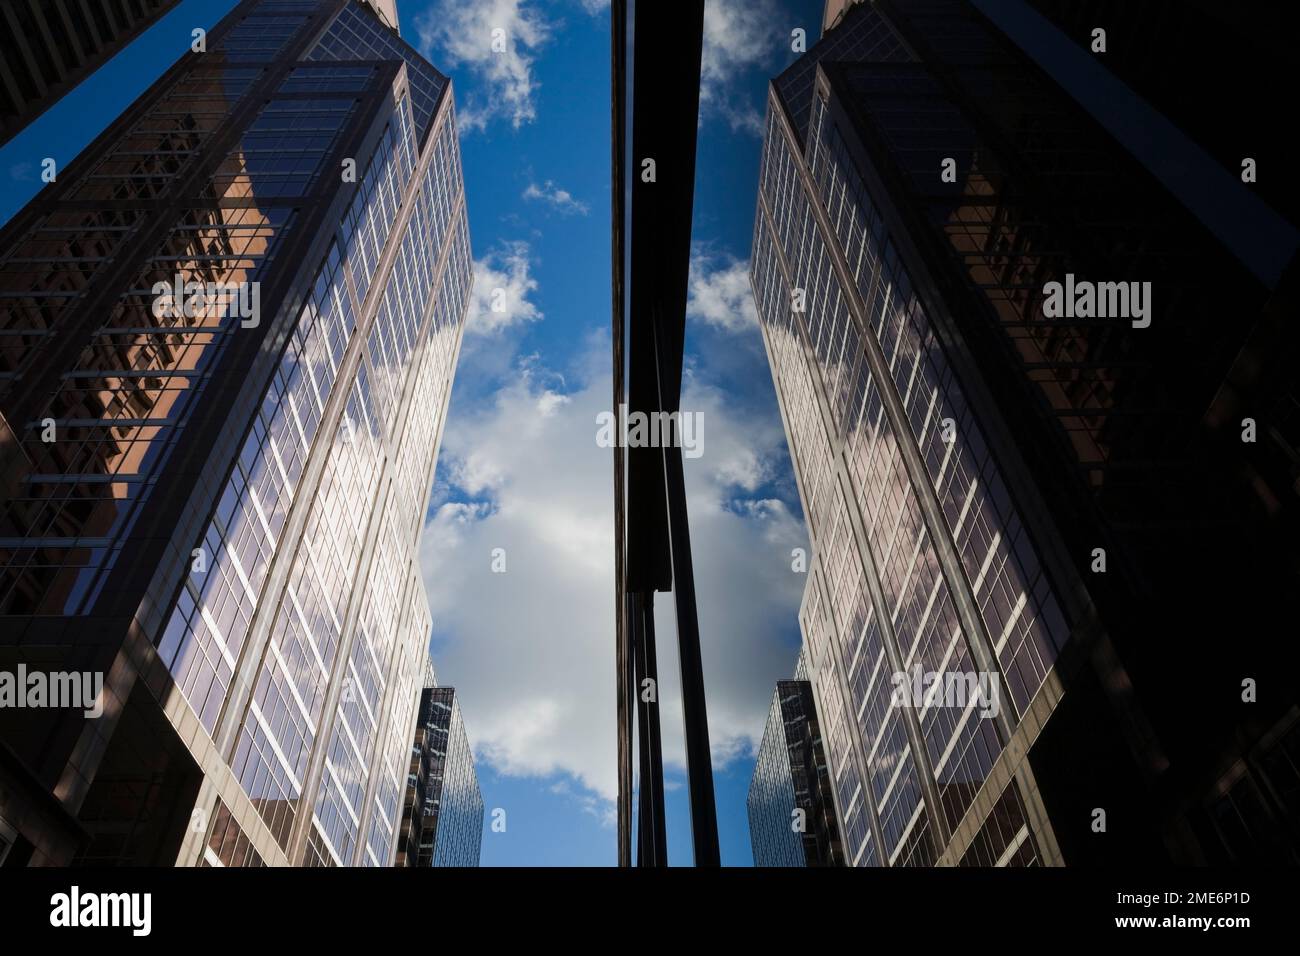 Immagine speculare di edifici con cielo blu e nuvole riflesse nella grande finestra di vetro, Montreal, Quebec, Canada. Foto Stock